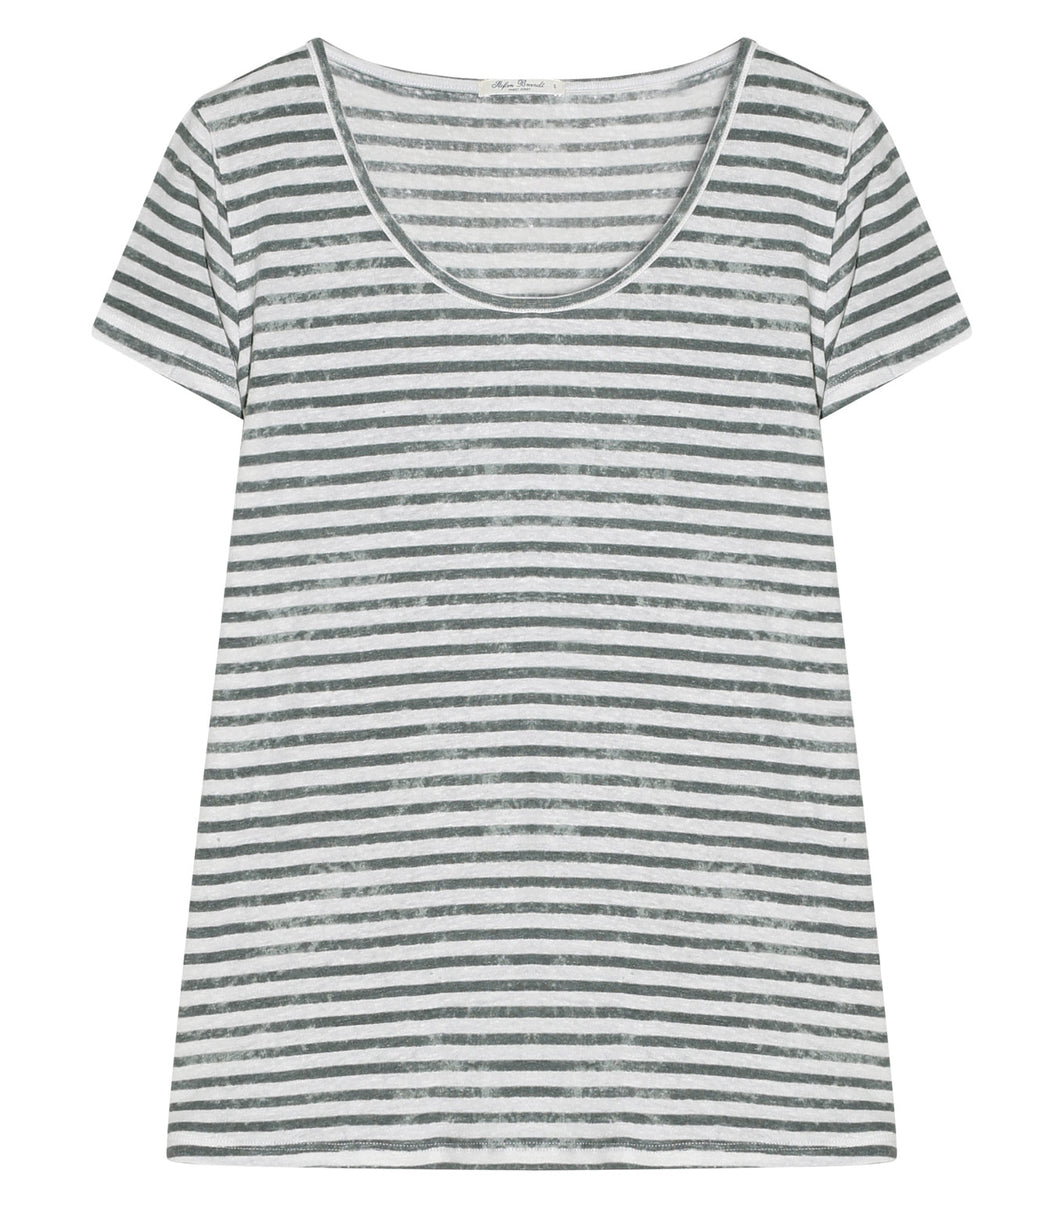 Stefan Brandt Linen Shirt Sienna Stripes Round Neck Short Sleeve